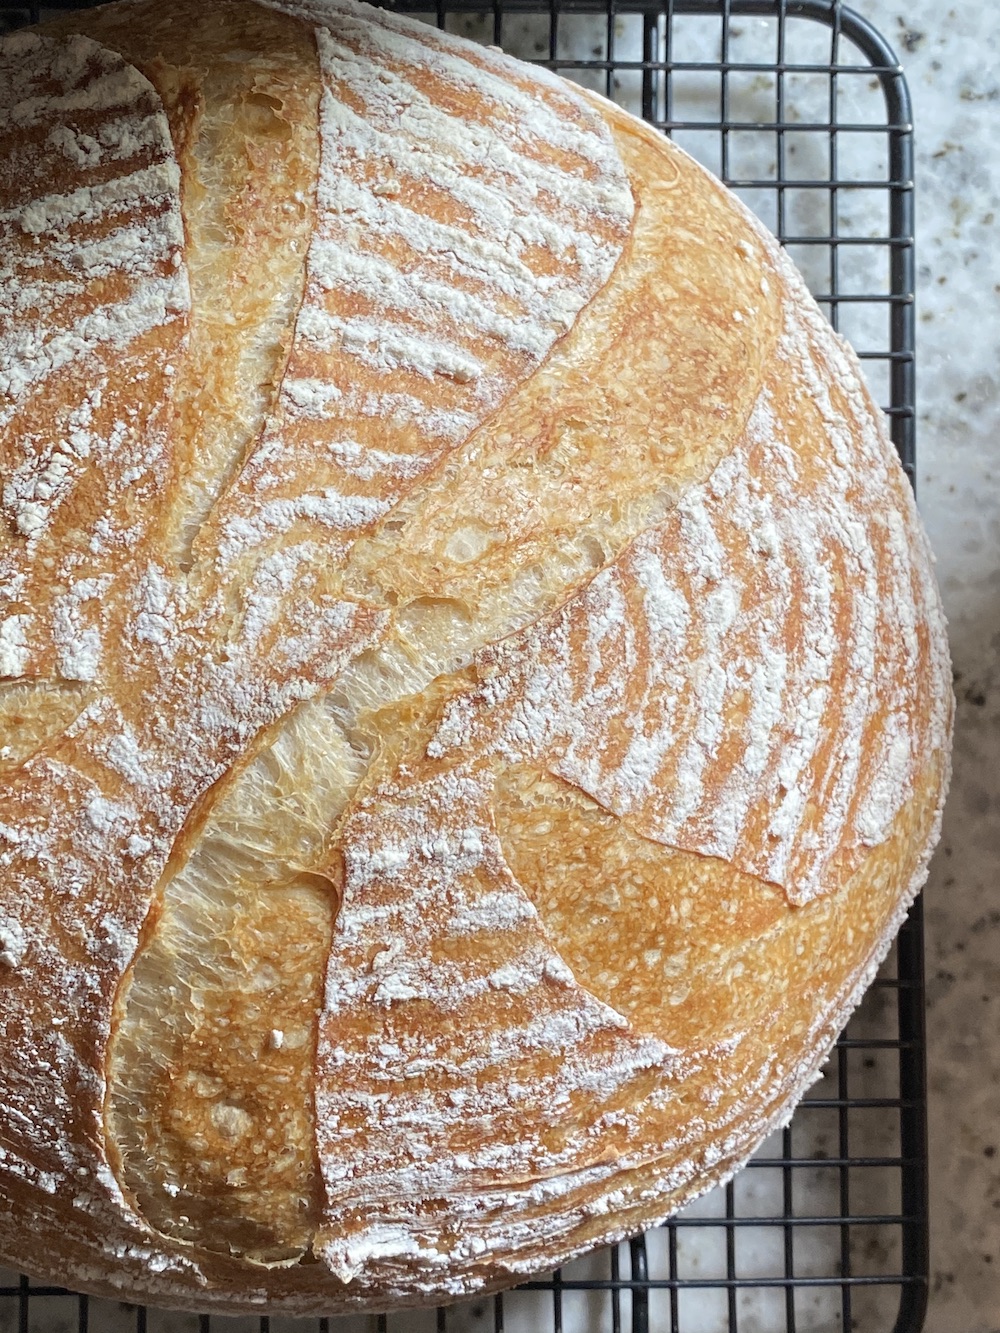 A recent sourdough bread bake